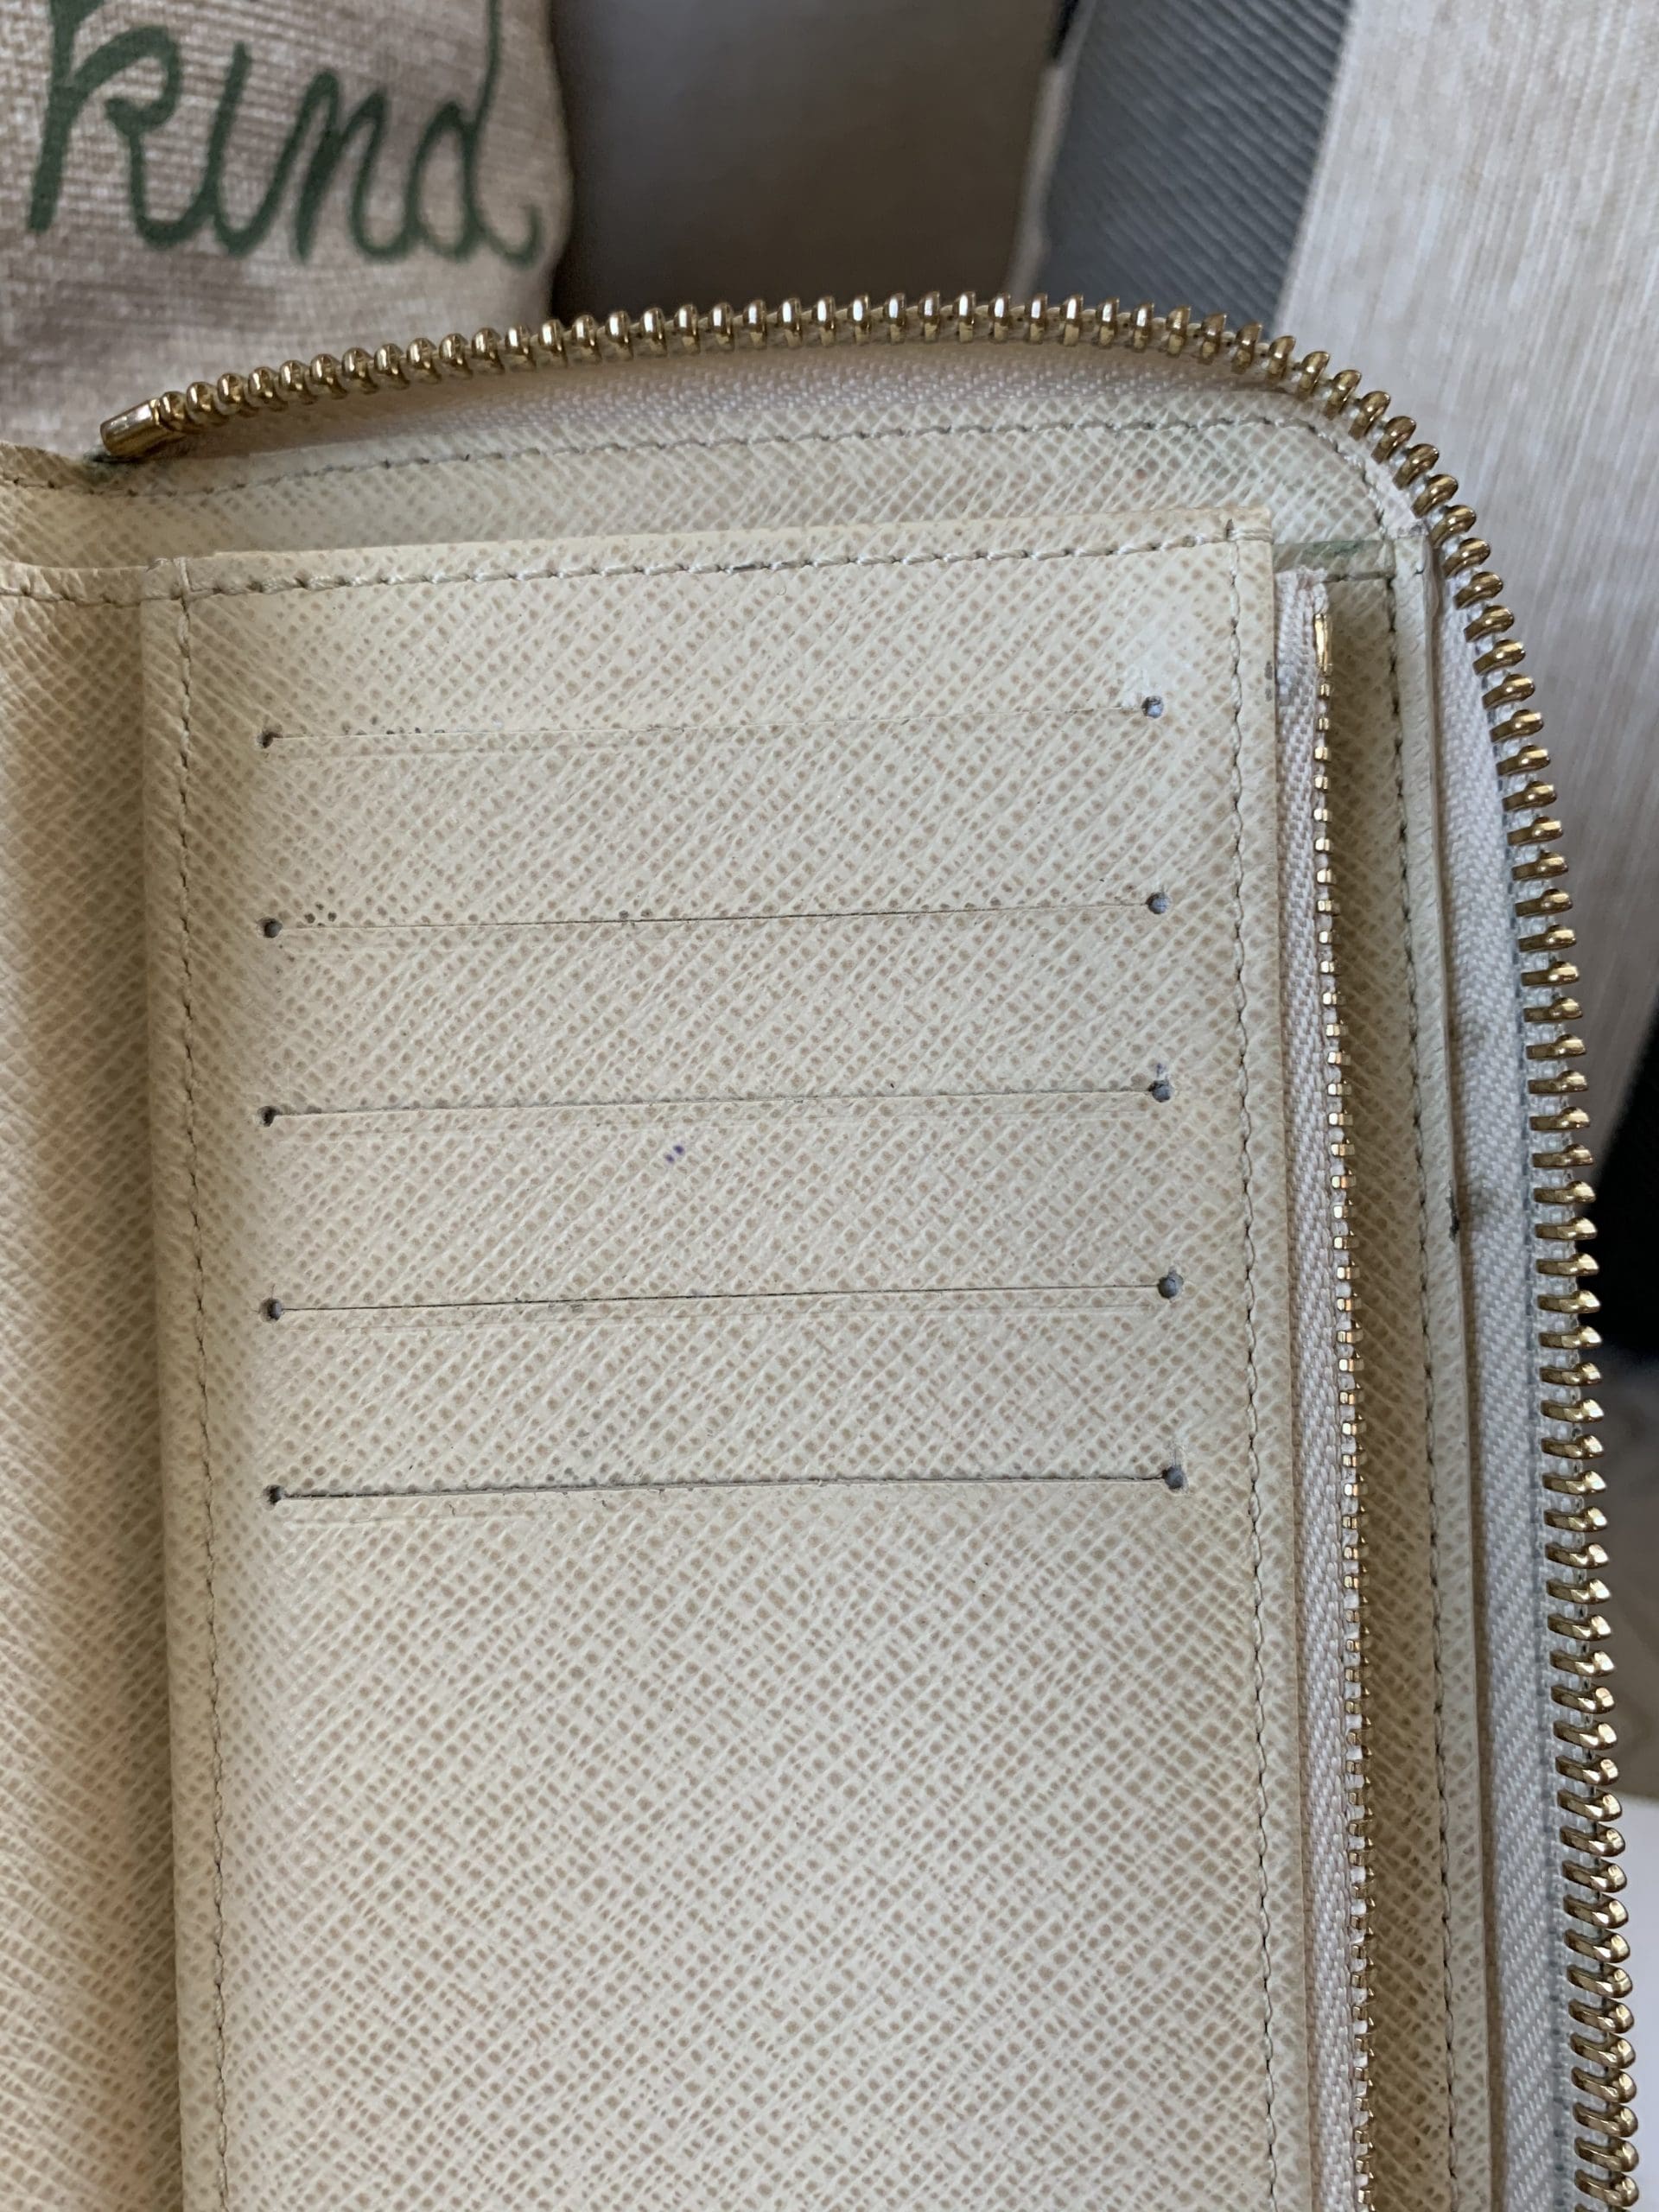 Louis Vuitton Damier Azur Compact Zippy Wallet – The Stock Room NJ